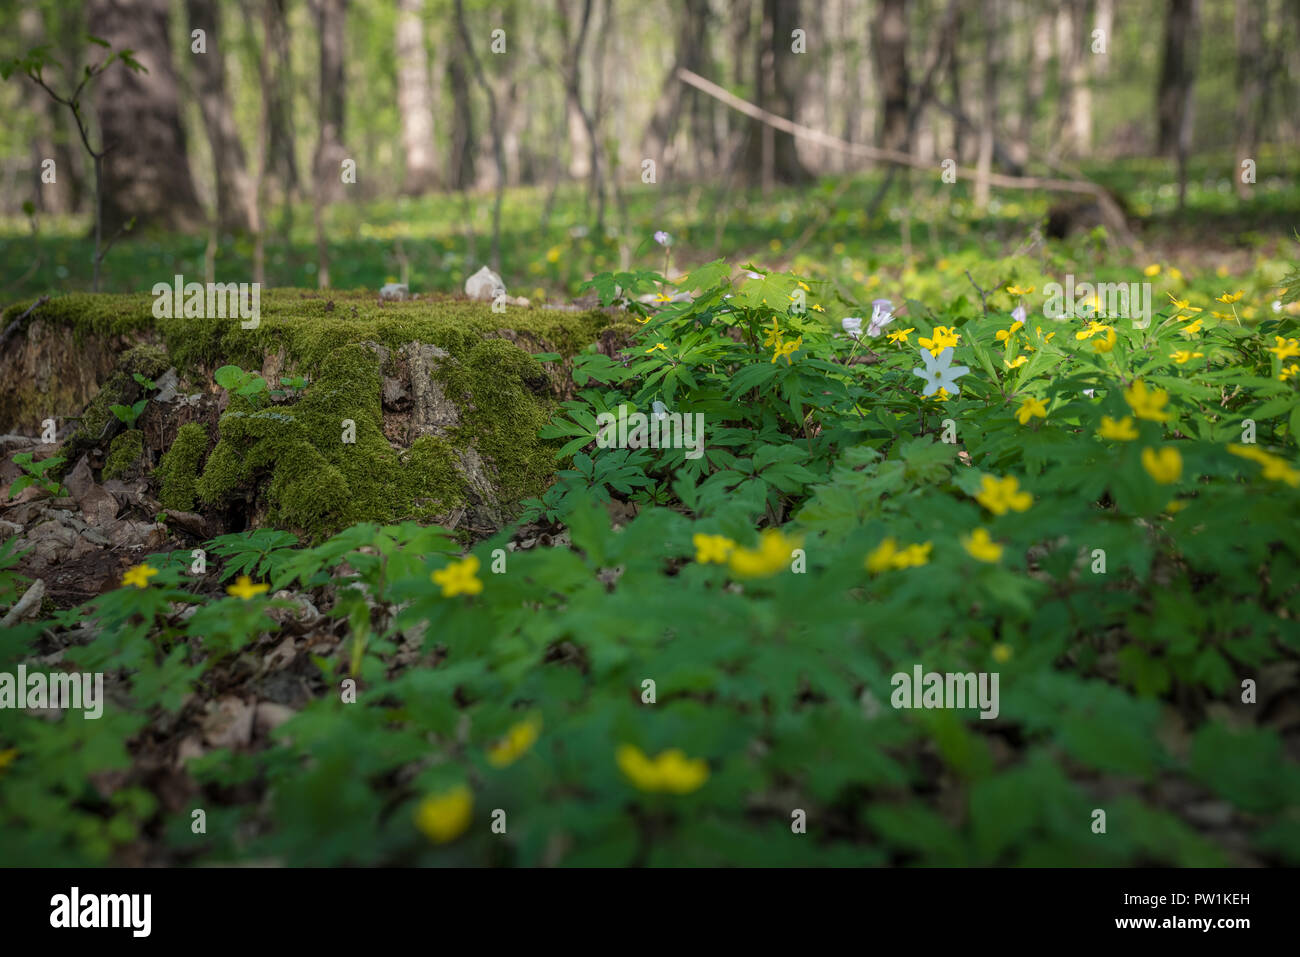 Frühblüher im Wald Stock Photo - Alamy